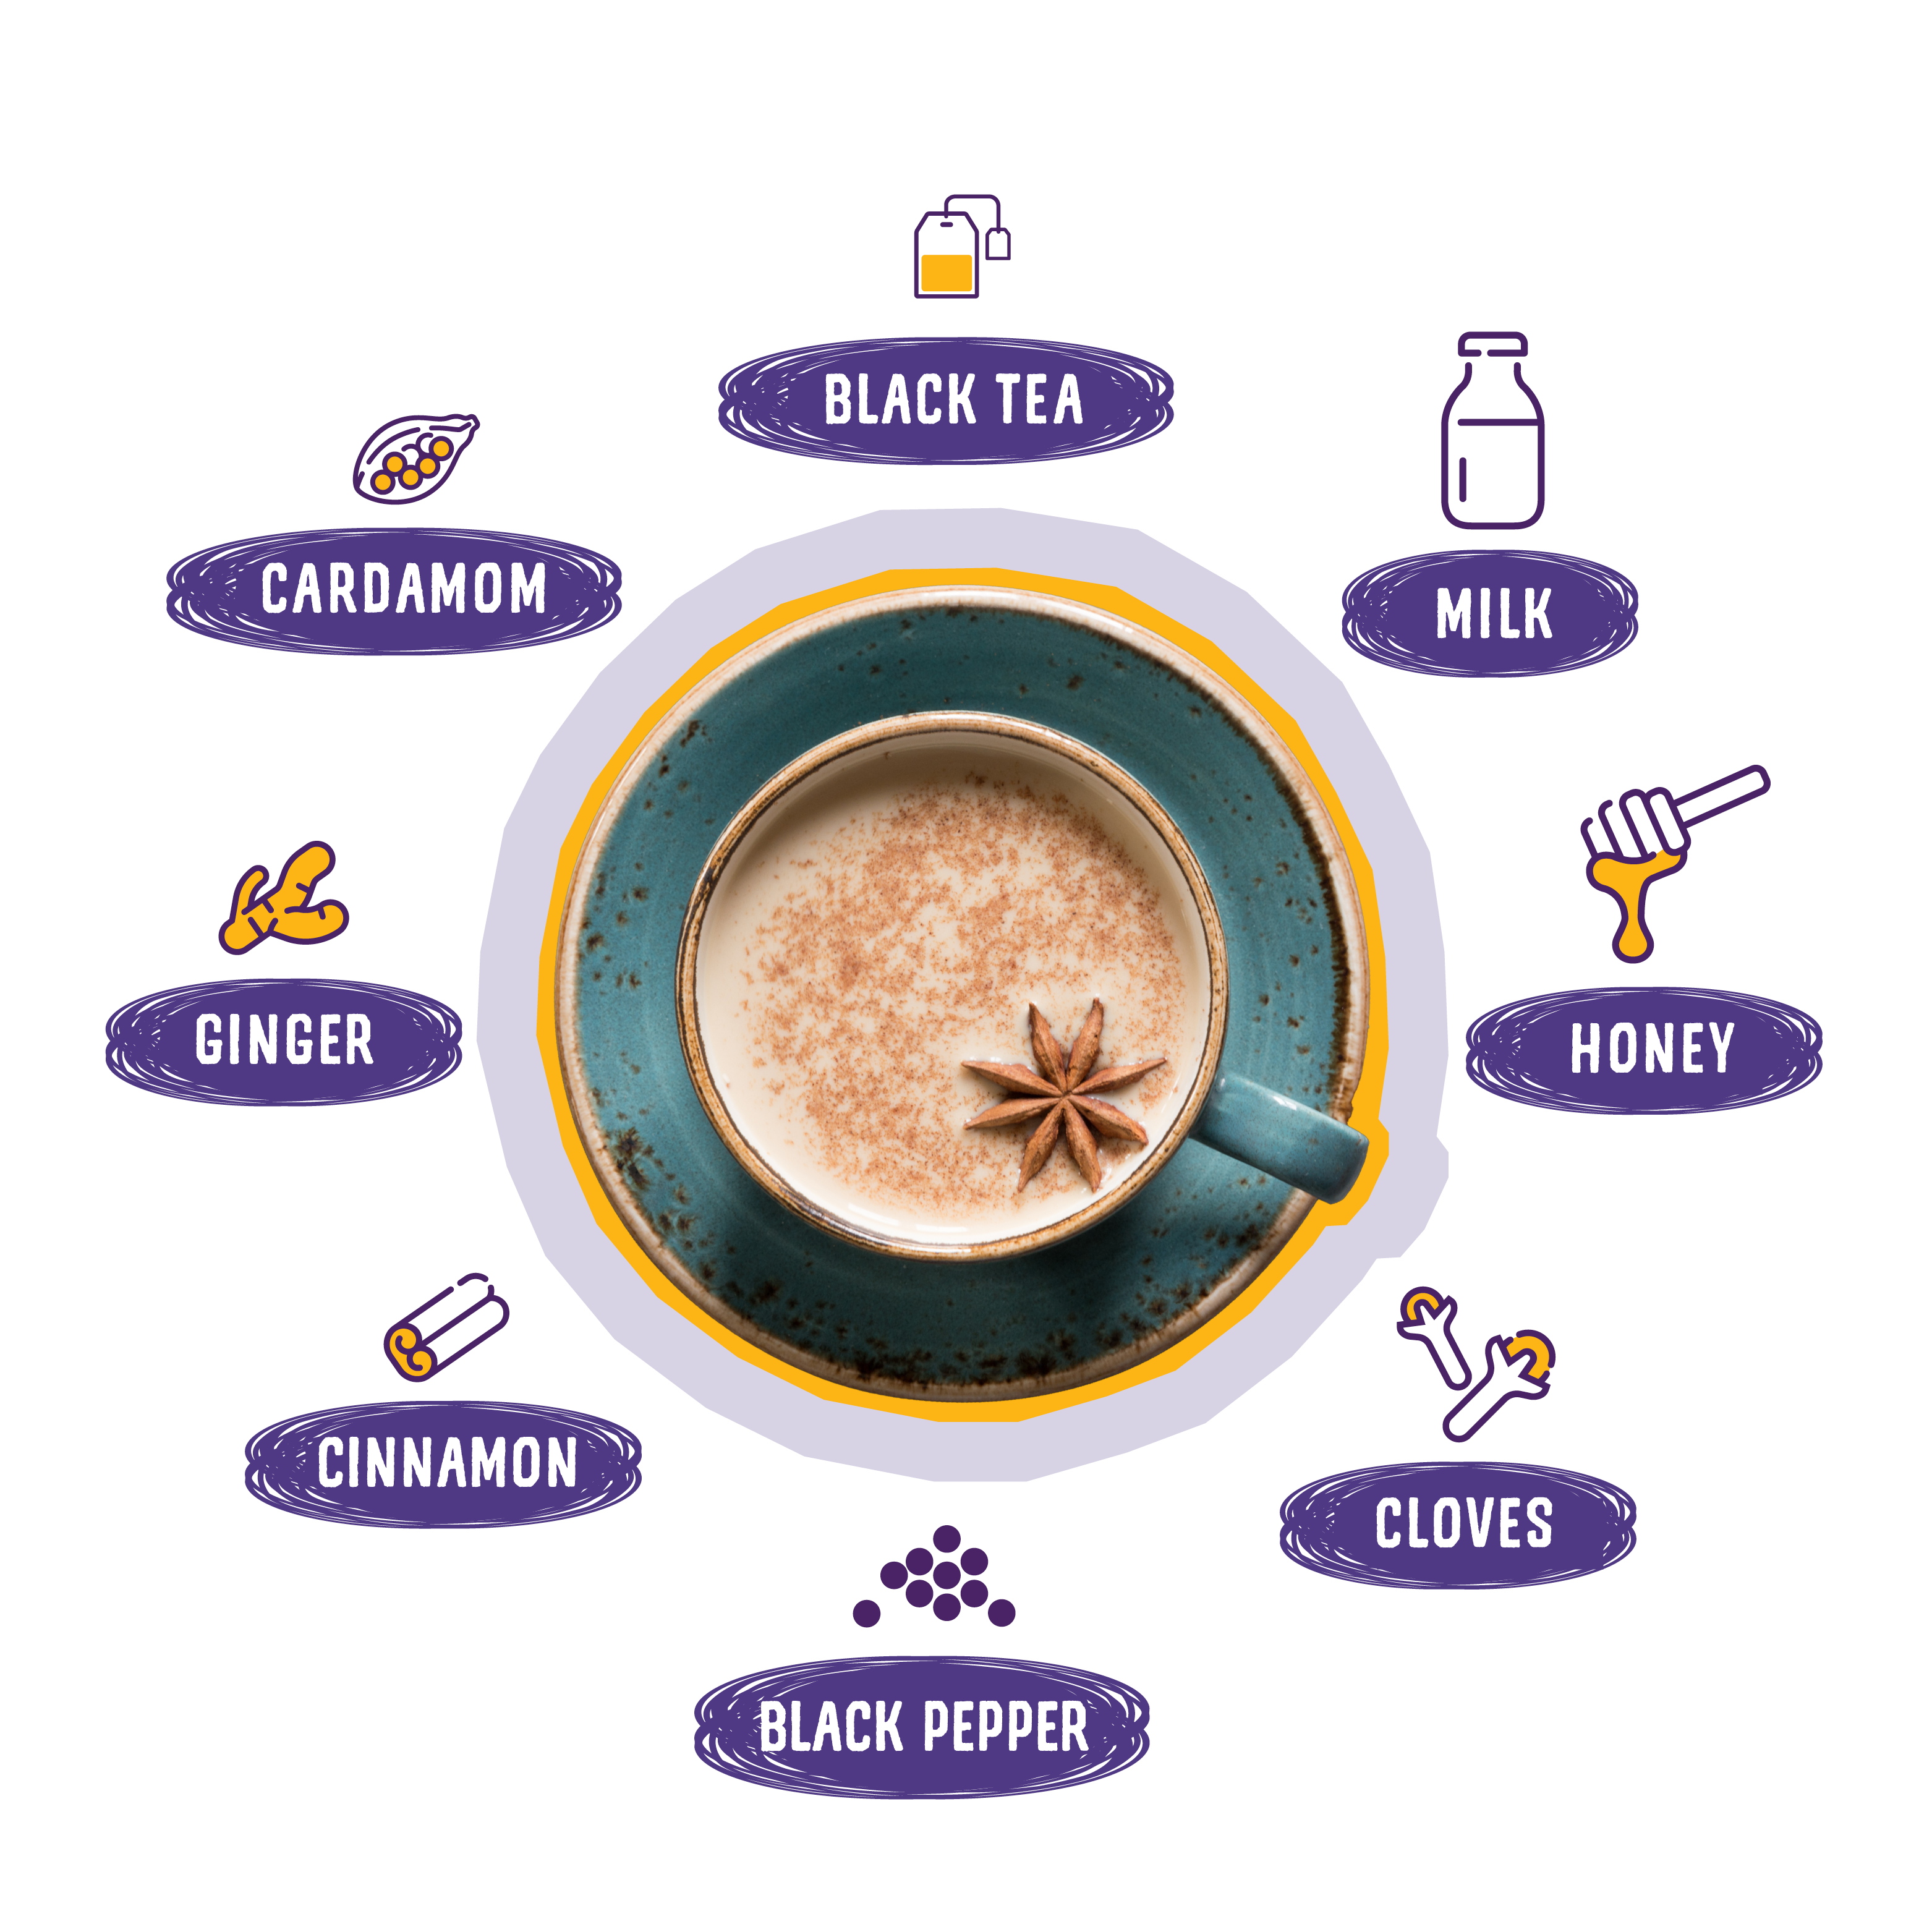 Components of chai; balck tea, milk, honey, cloves, black pepper, cinnamon, ginger, cardamom